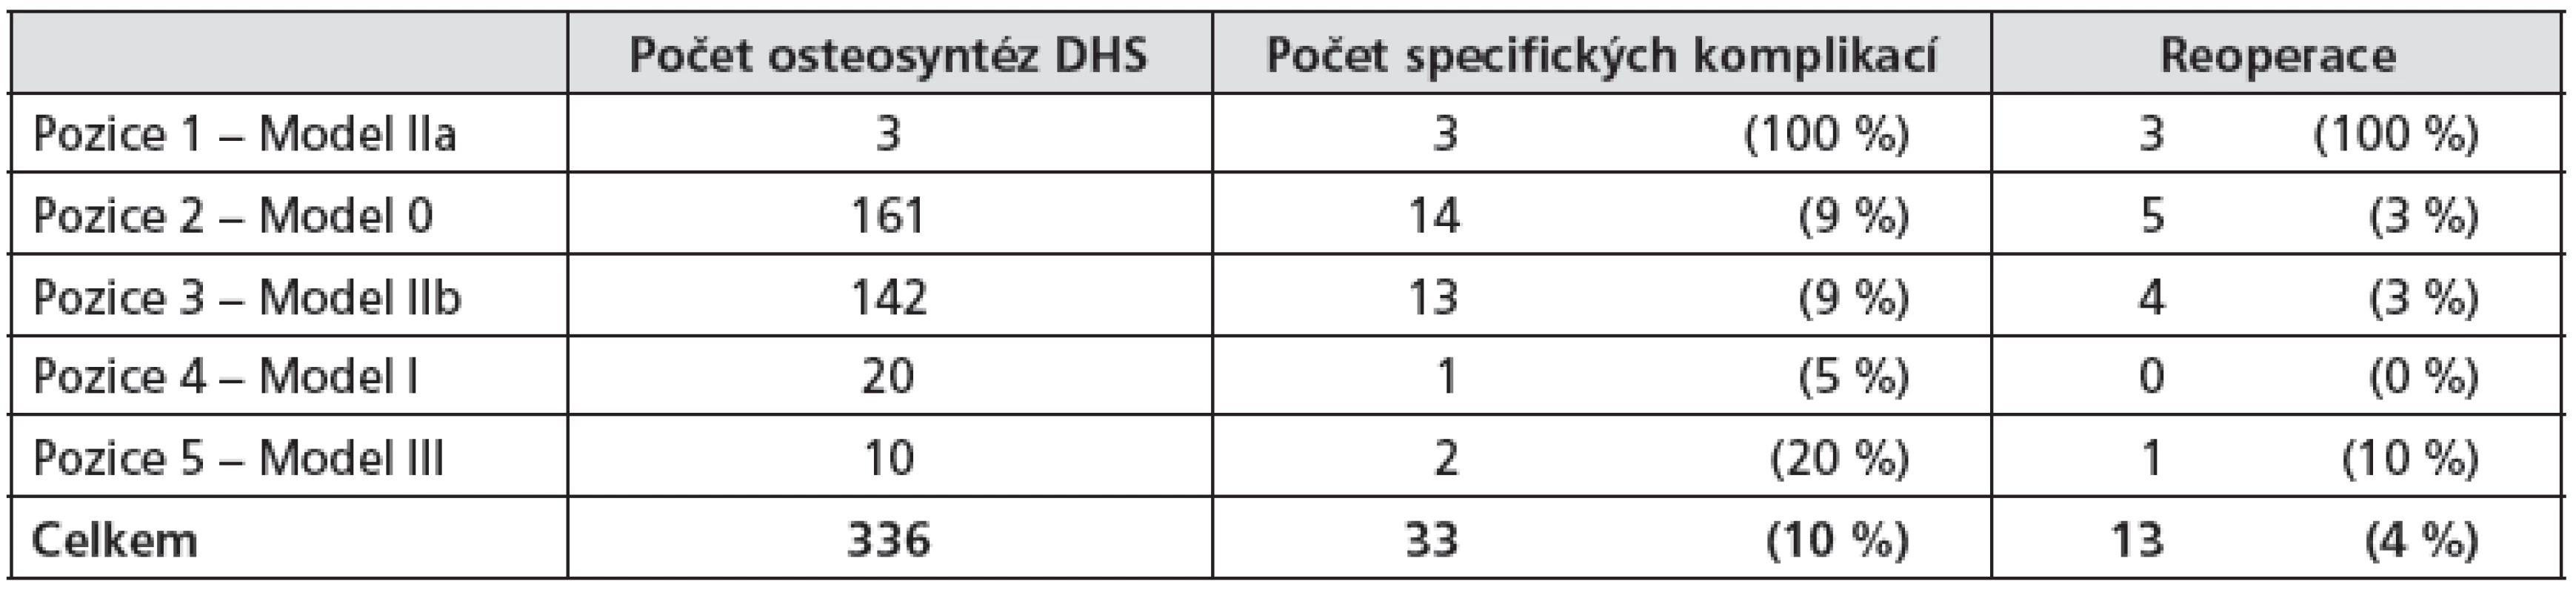 Přehled pacientů sledovaného souboru rozdělených podle umístění šroubu DHS, které byly předmětem analýzy počítačového modelu.